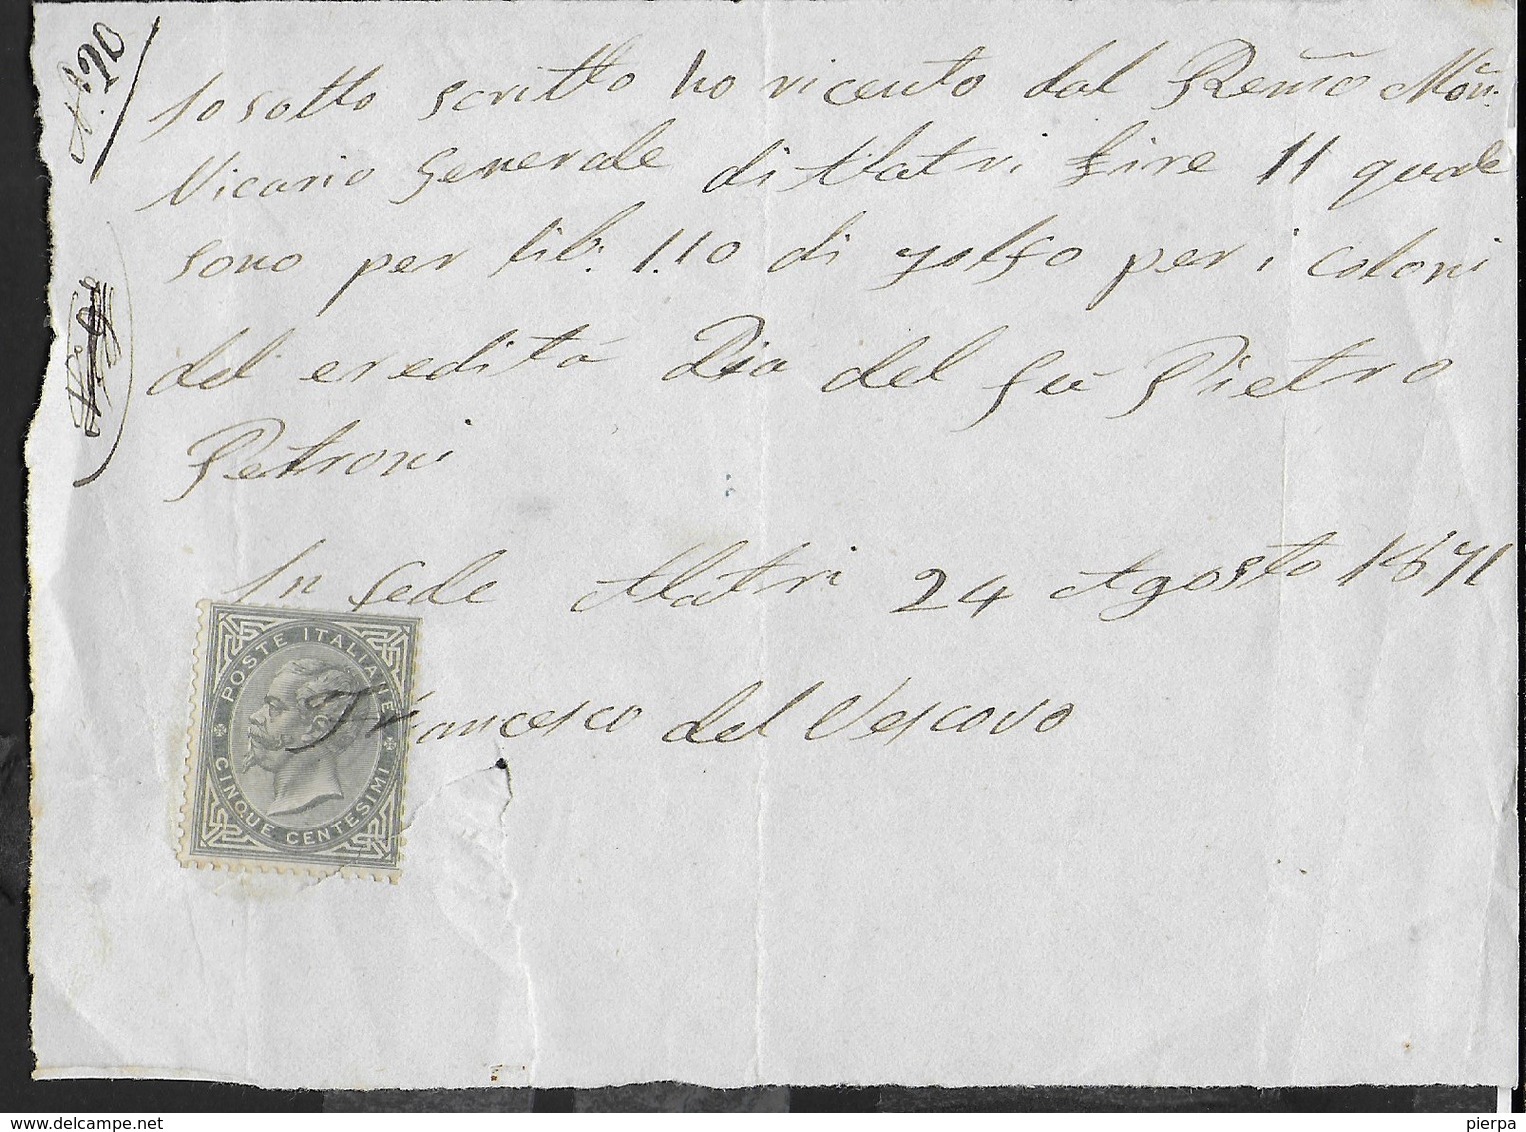 STORIA POSTALE REGNO - UTILIZZO CENT 5 SU RICEVUTA DI PAGAMENTO  24.08.1871 - Revenue Stamps